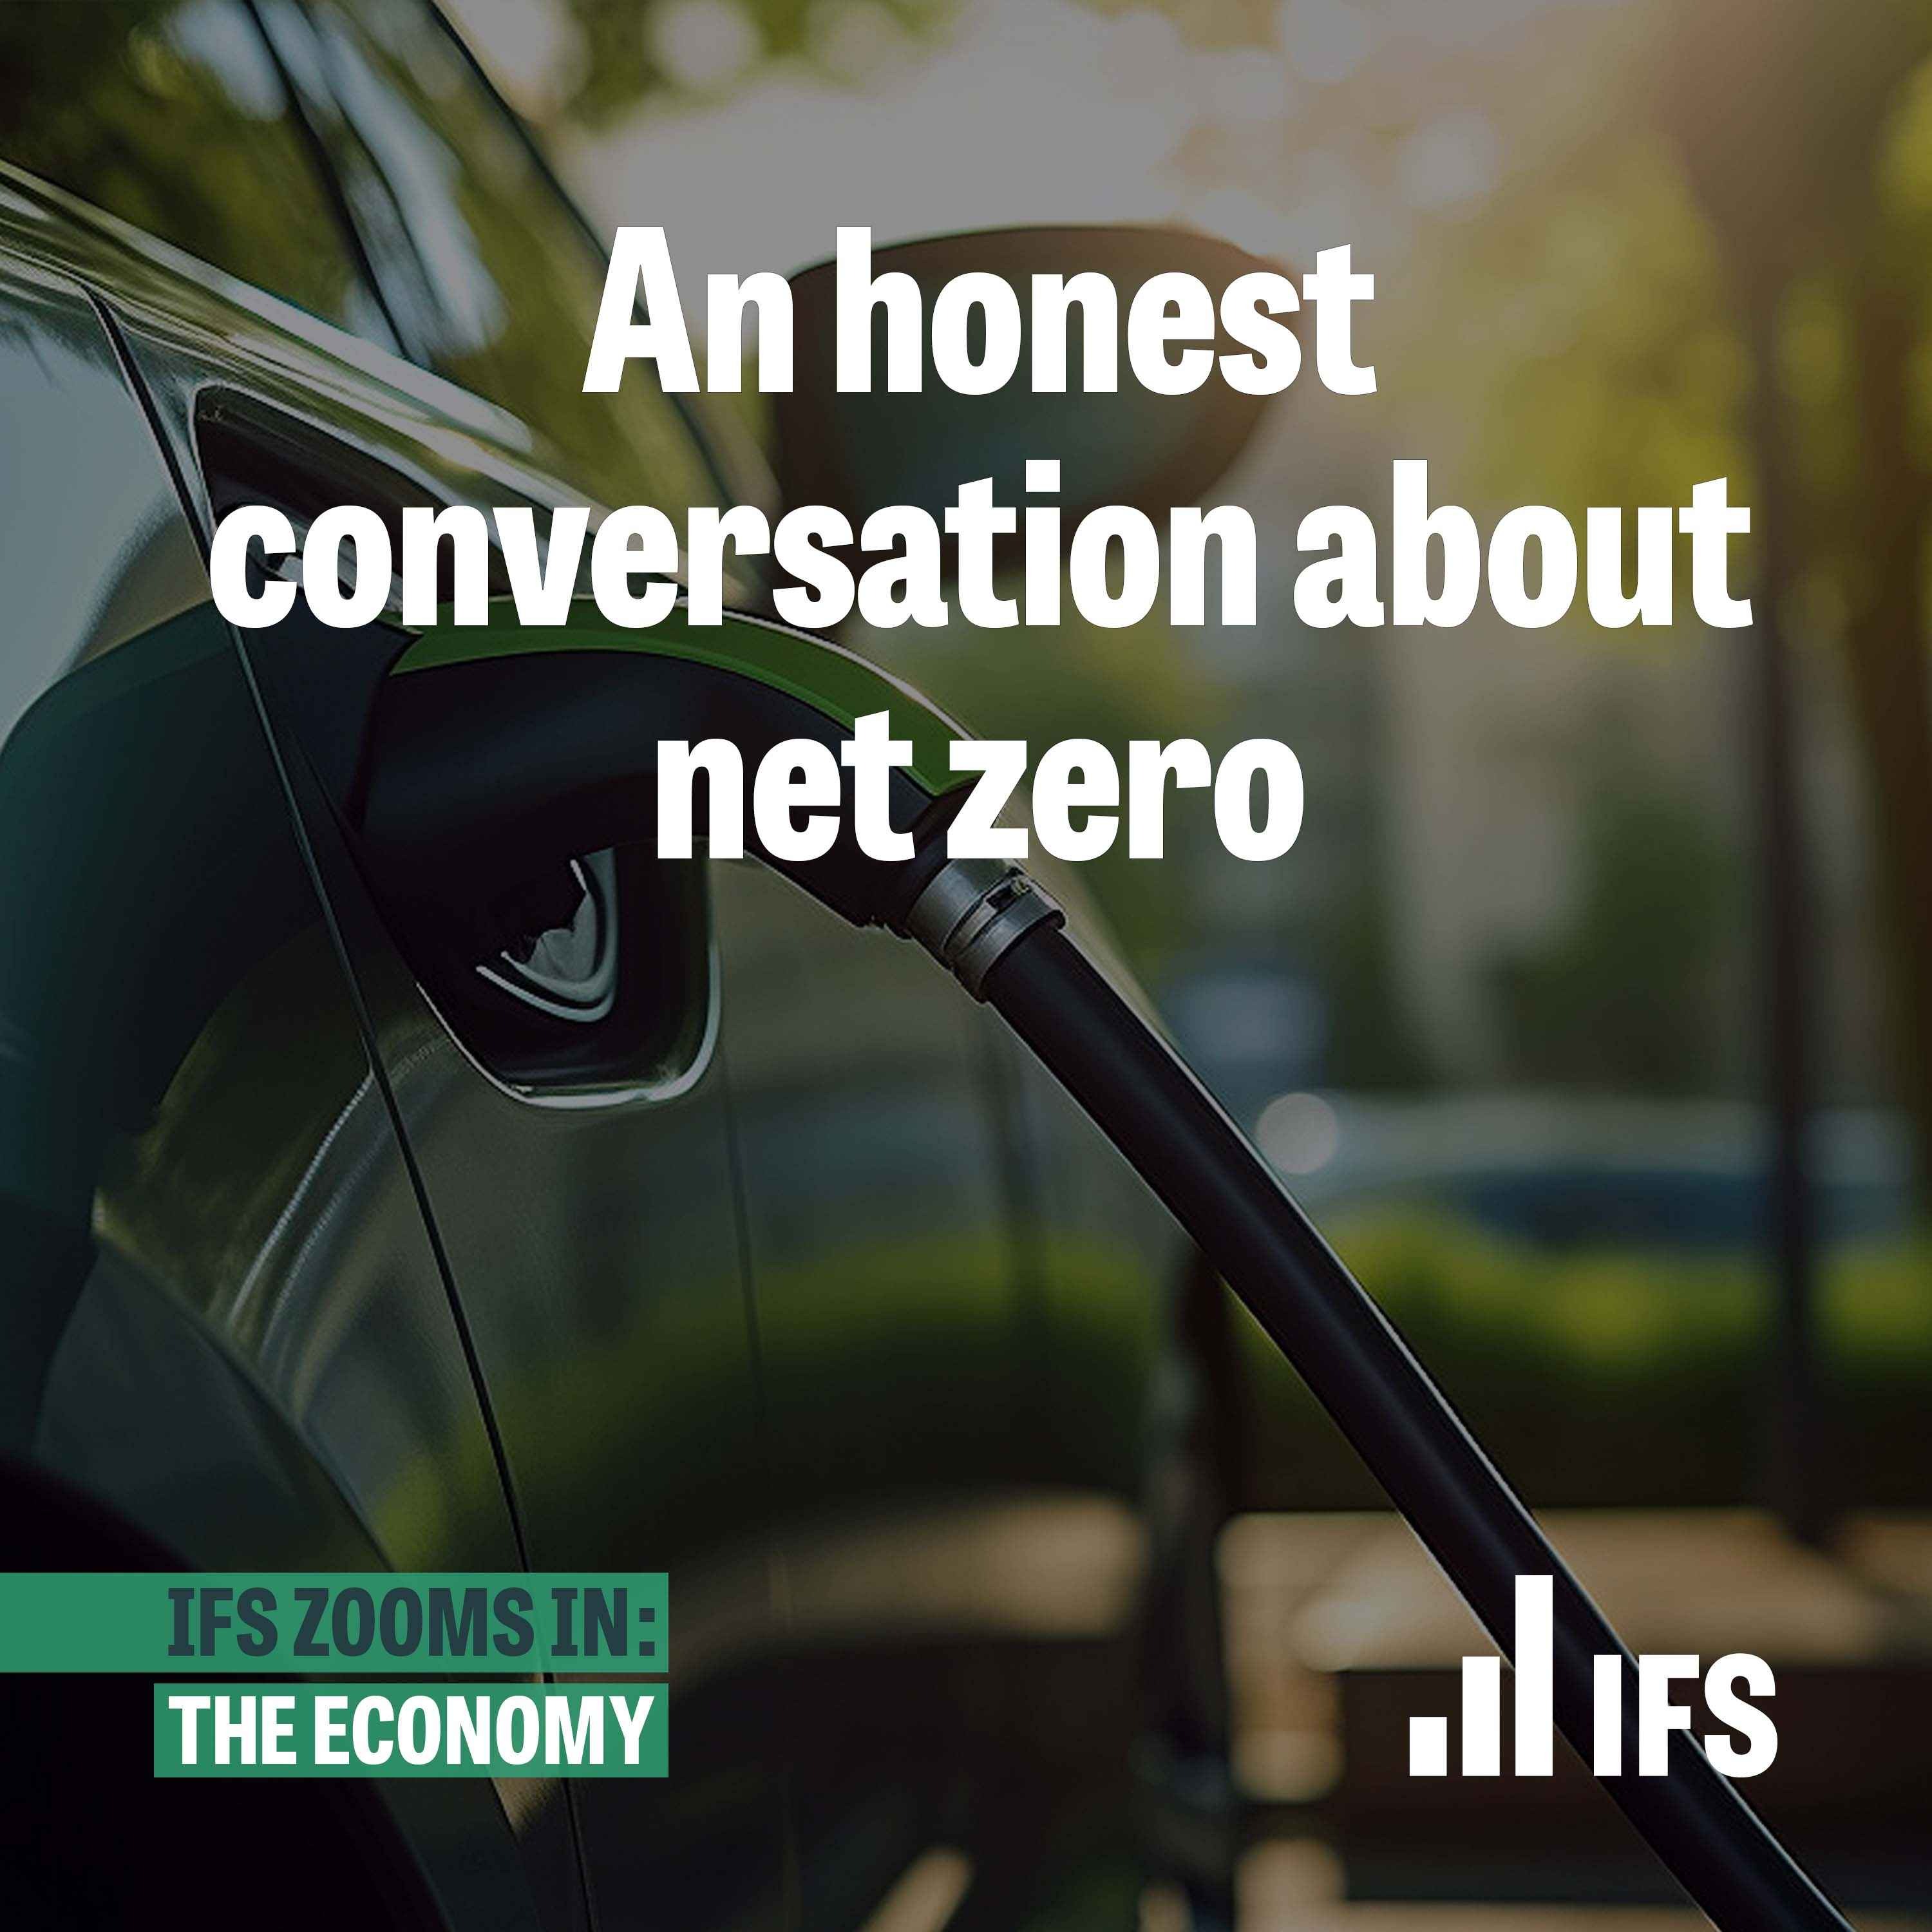 An honest conversation about net zero